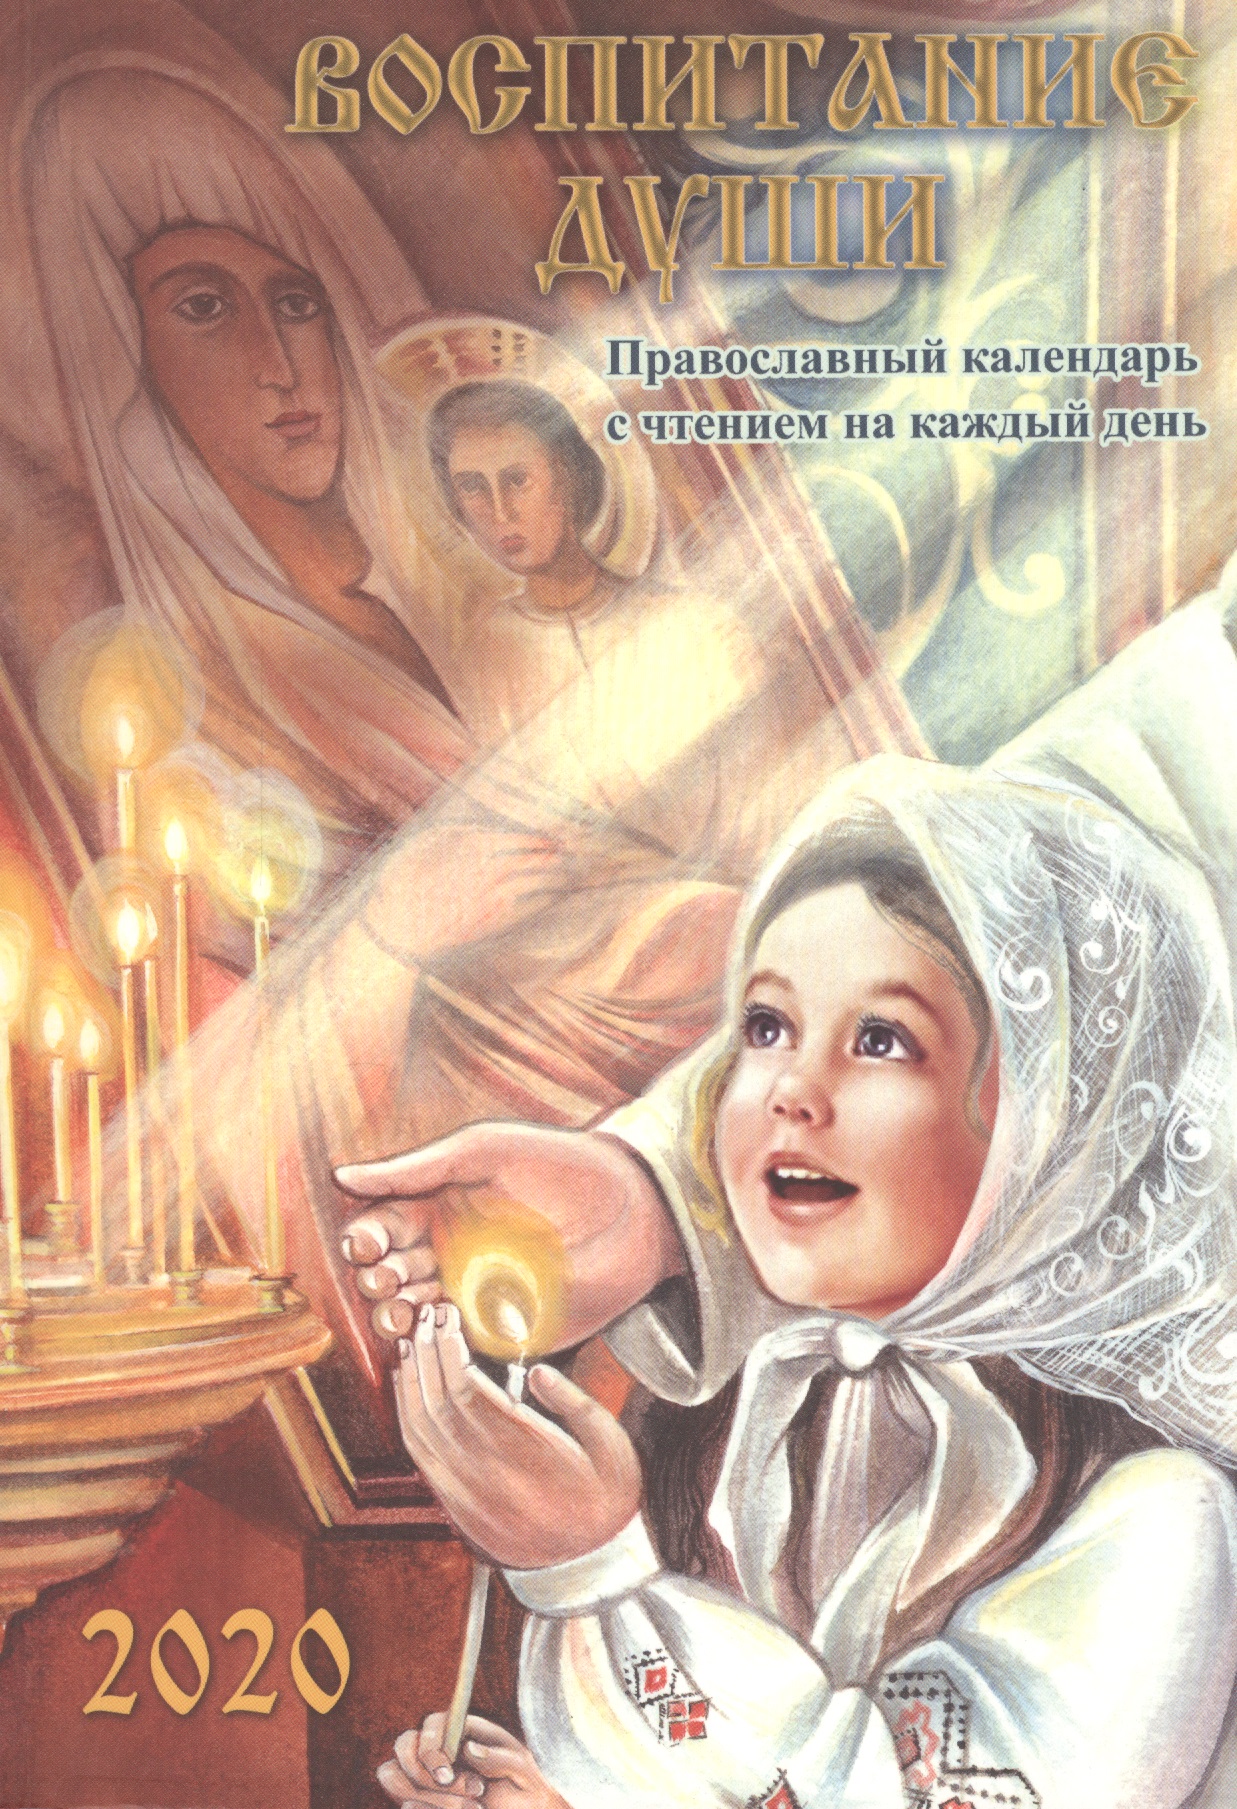 Воспитание души. Православный календарь с чтением на каждый день, 2020 год души православный календарь с чтением на каждый день 2020